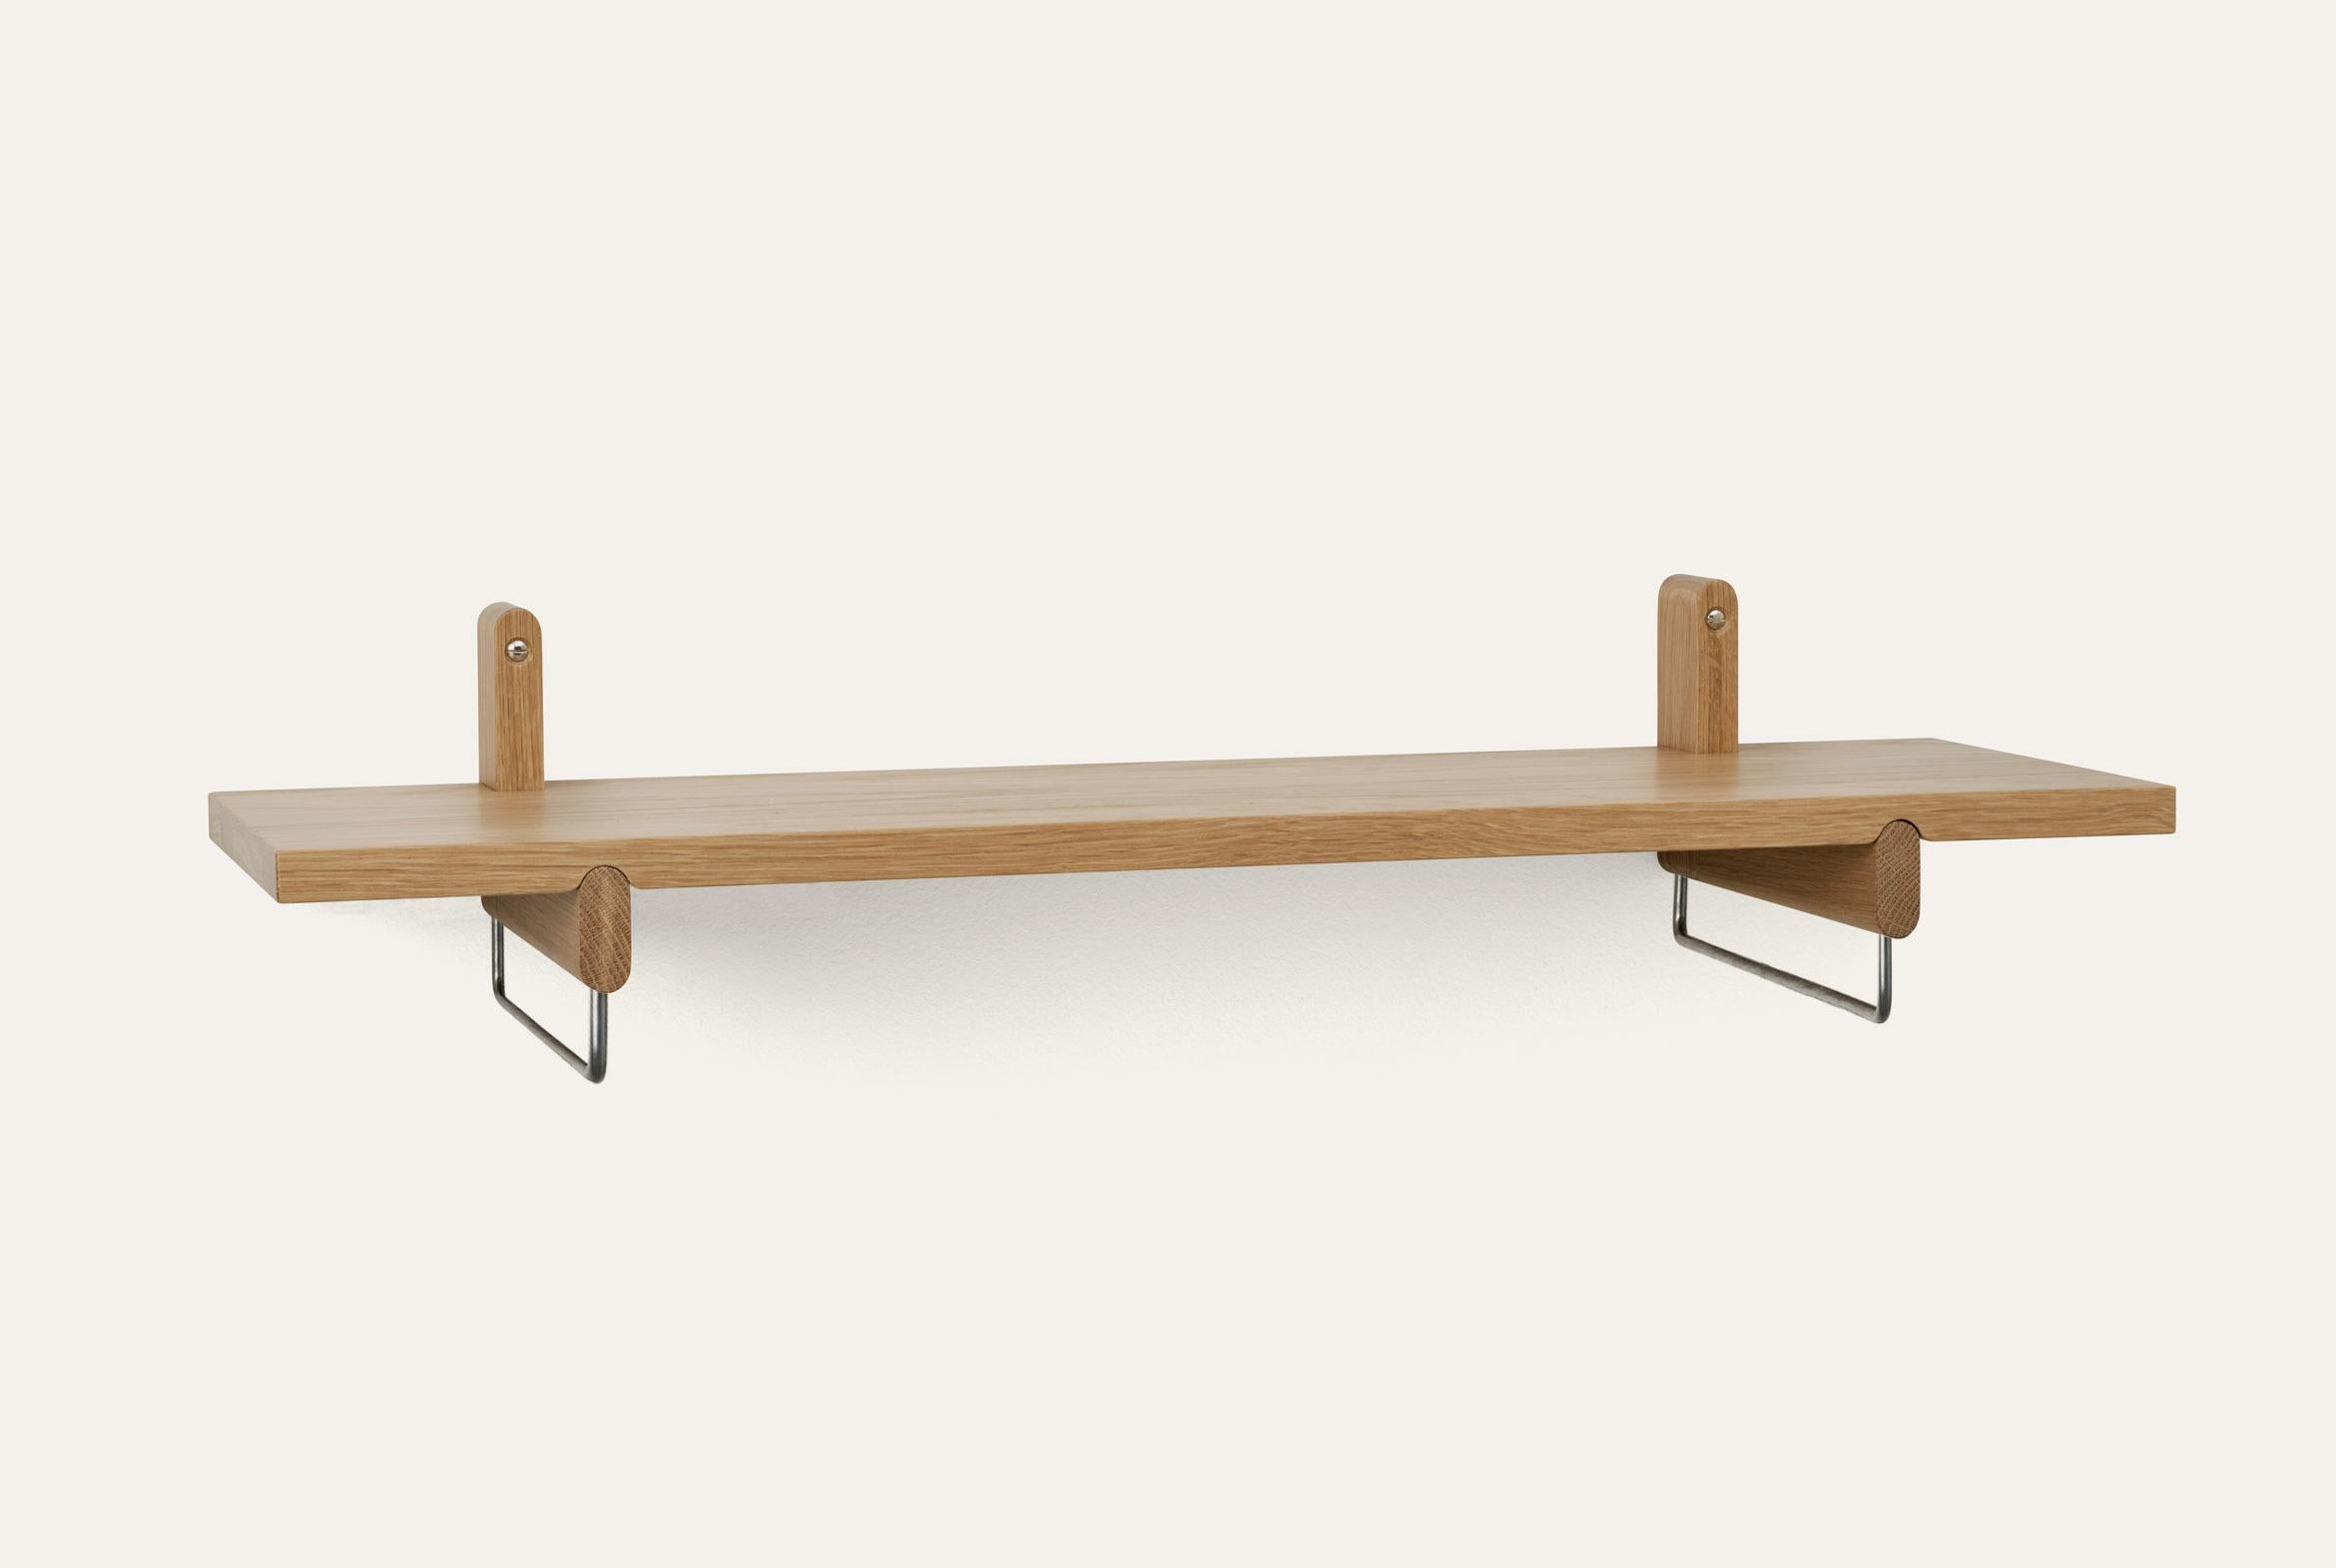 Natürliches Rondellregal mit Aufhänger von Storängen Design
Abmessungen: T 80 x B 25 x H 18 cm
MATERIALIEN: Eichenholz, Stahl.
Erhältlich in anderen Farben und mit oder ohne Stahlbügel.

Rondelle kann ein Regal oder ein kleiner Tisch sein, je nach